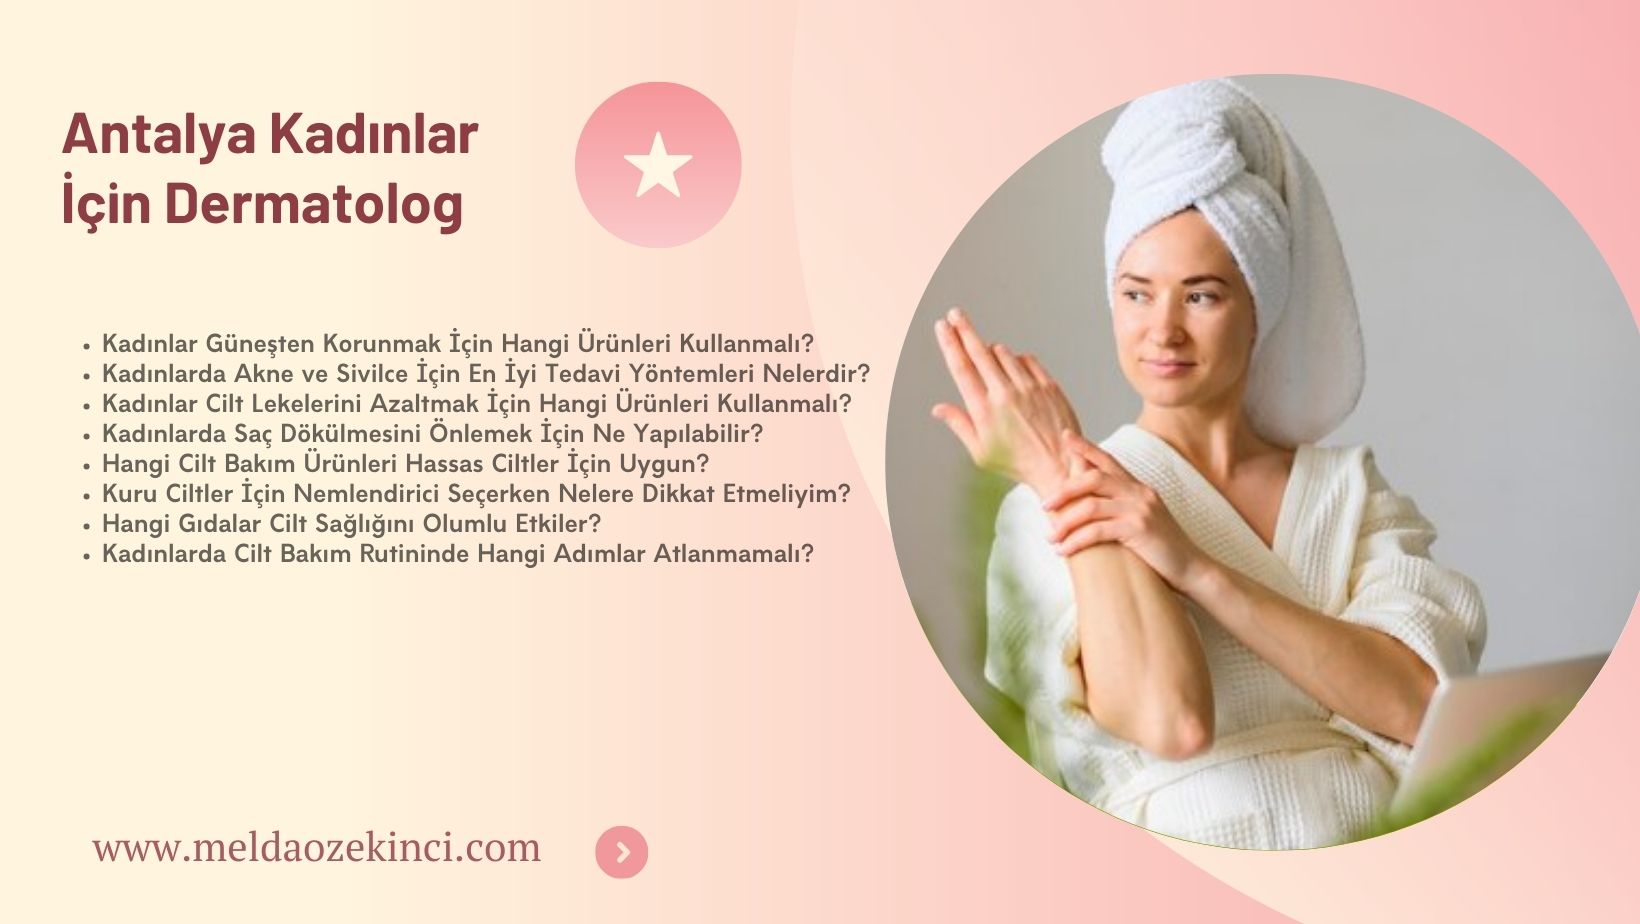 Antalya Dermatologist for Women